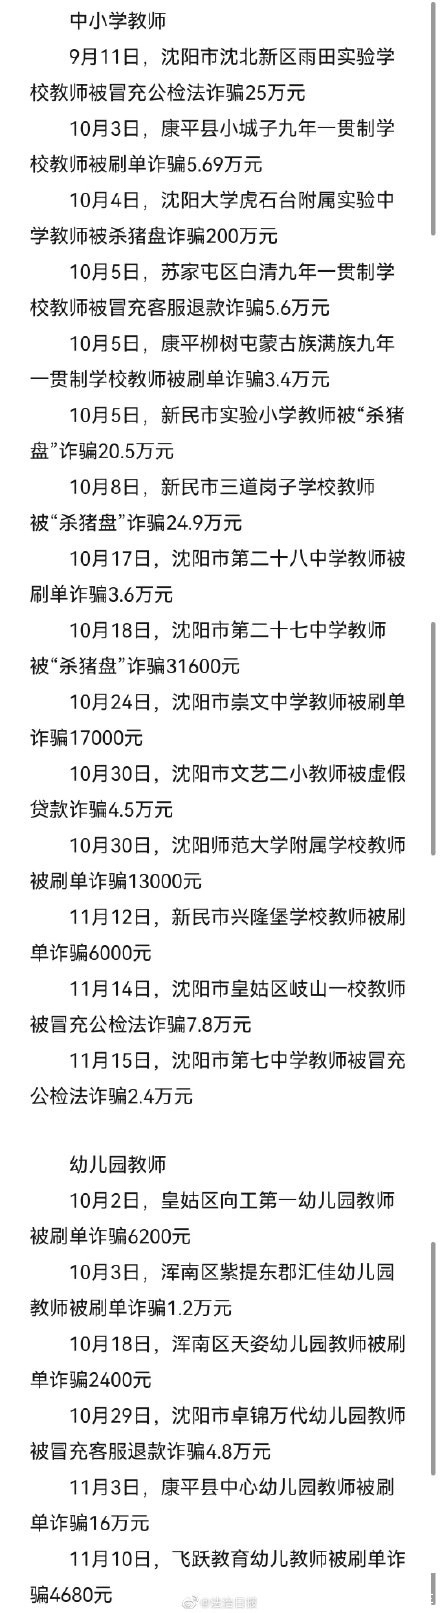 辽宁31位教师两个月被骗400万元